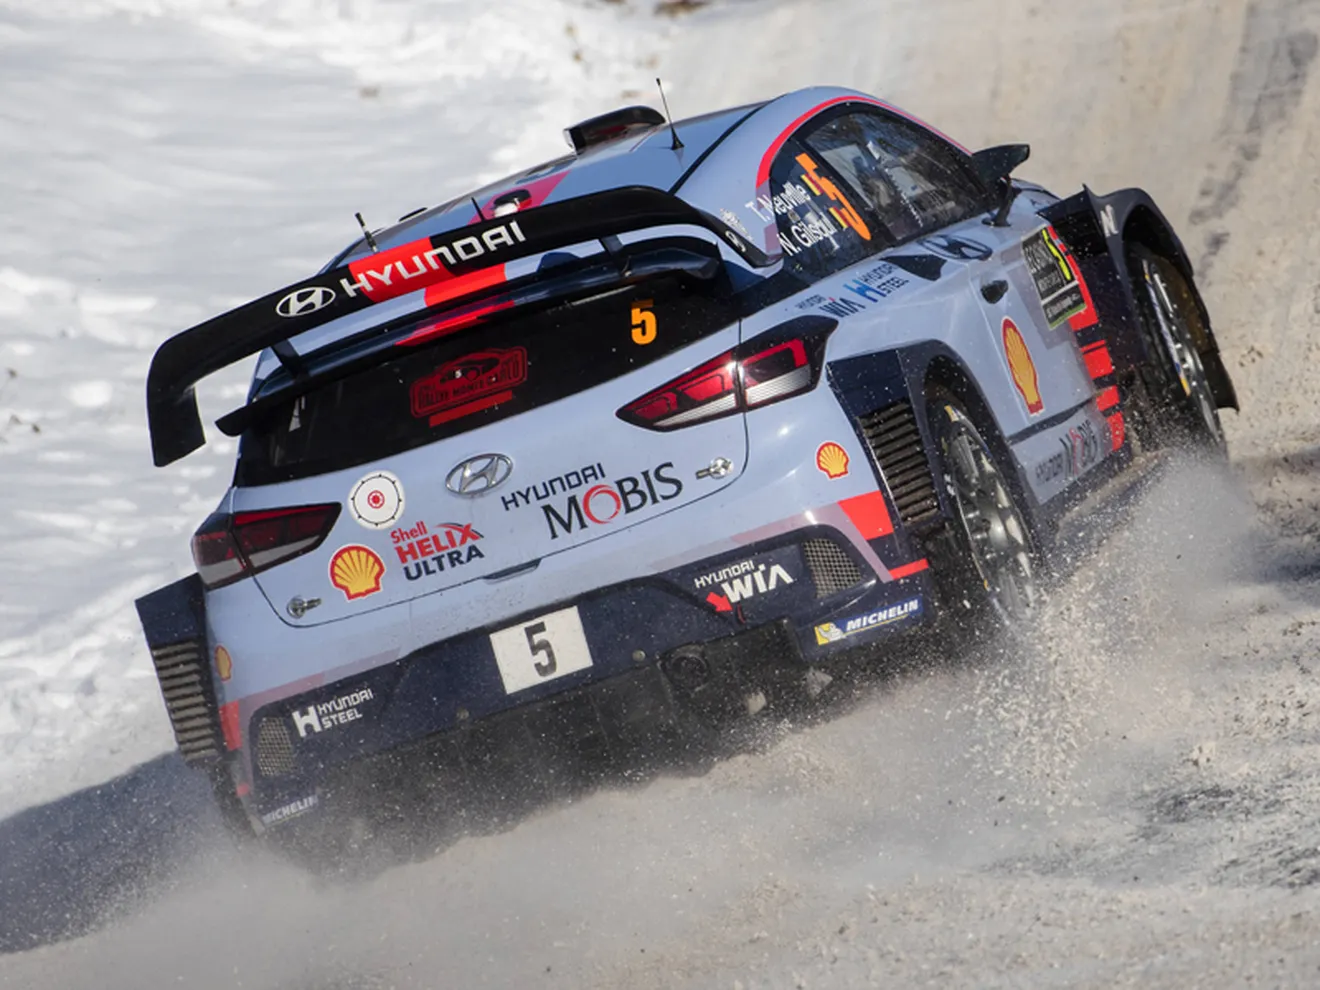 Hyundai busca su primer podio en el Rally de Suecia